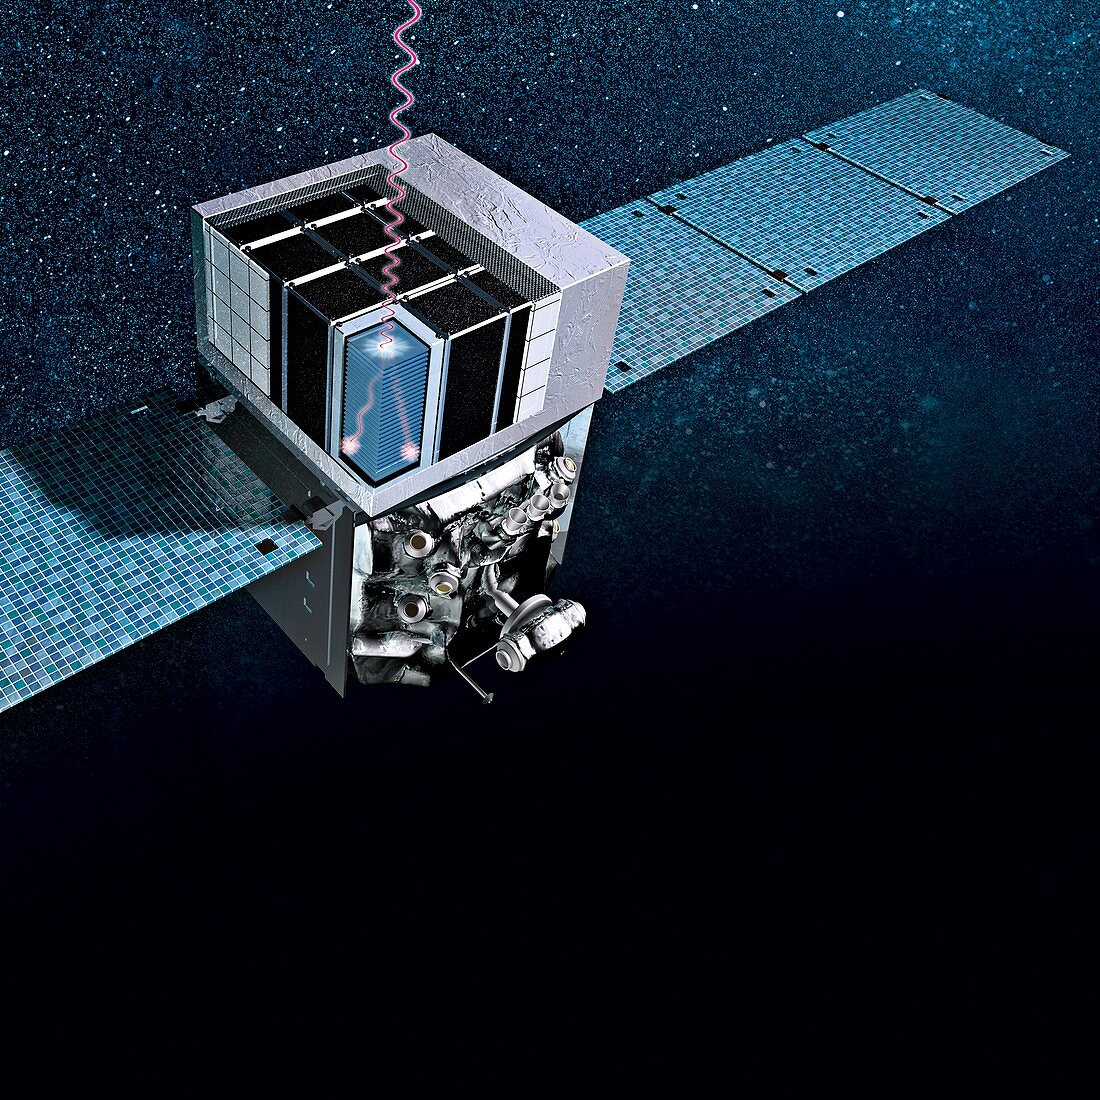 Fermi Gamma-ray Space Telescope, illustration